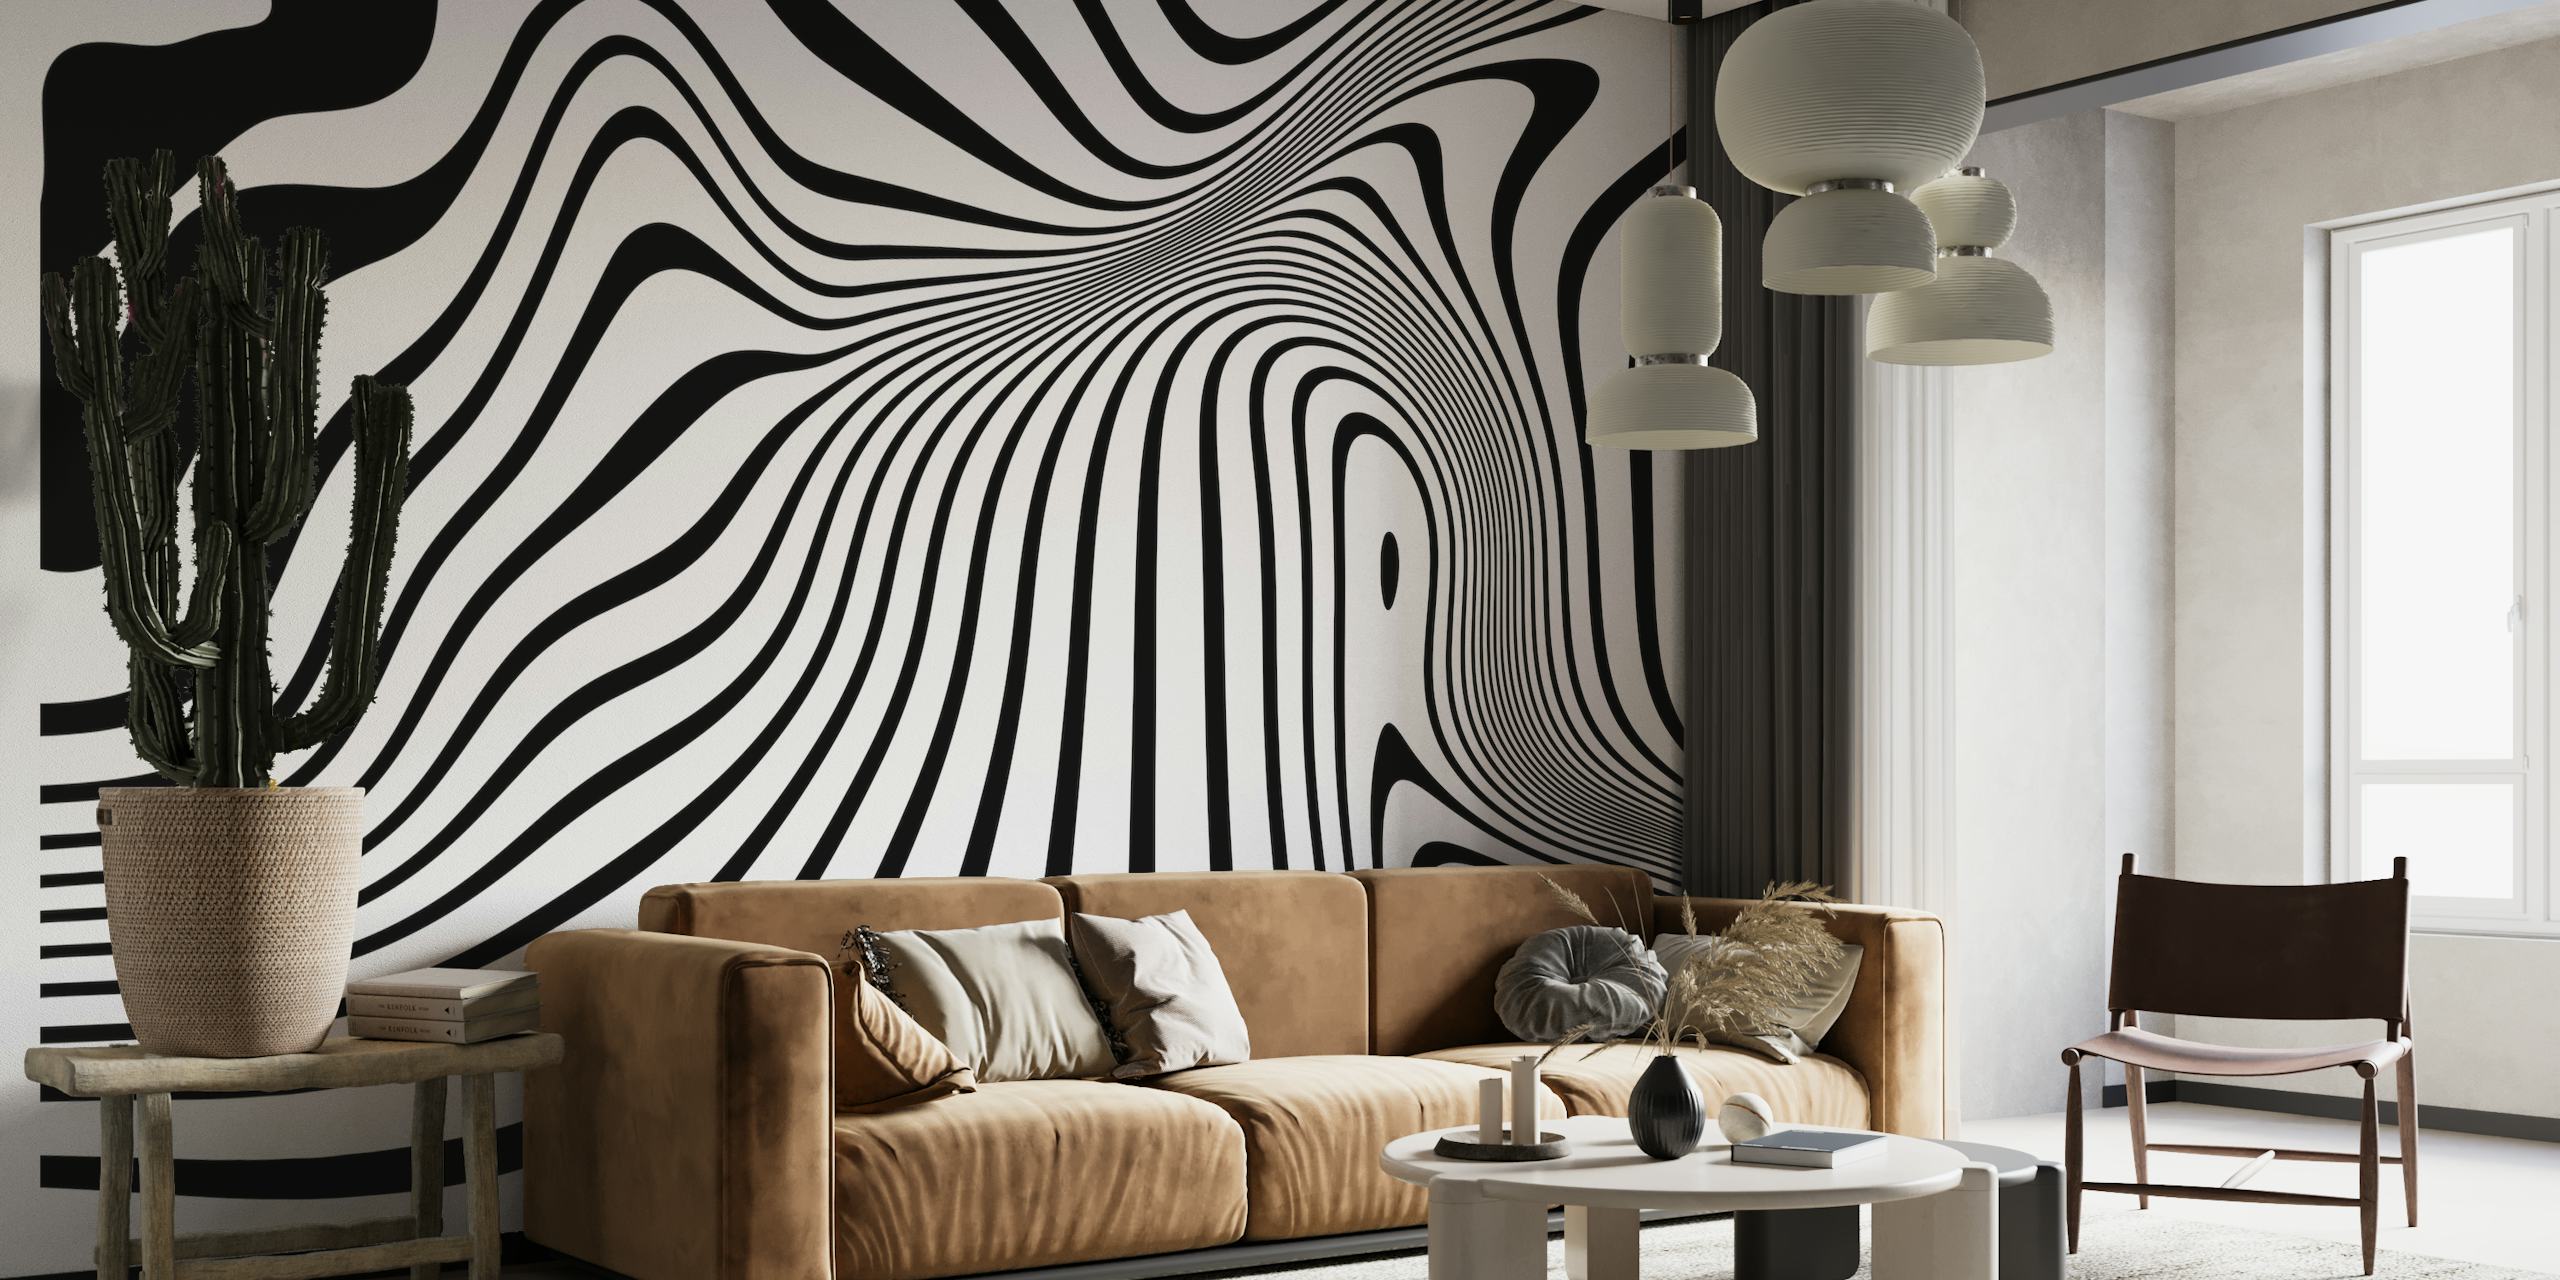 Abstrakt stregkunst i sort og hvidt vægmaleri med flydende, organiske former, der skaber en dynamisk visuel tekstur